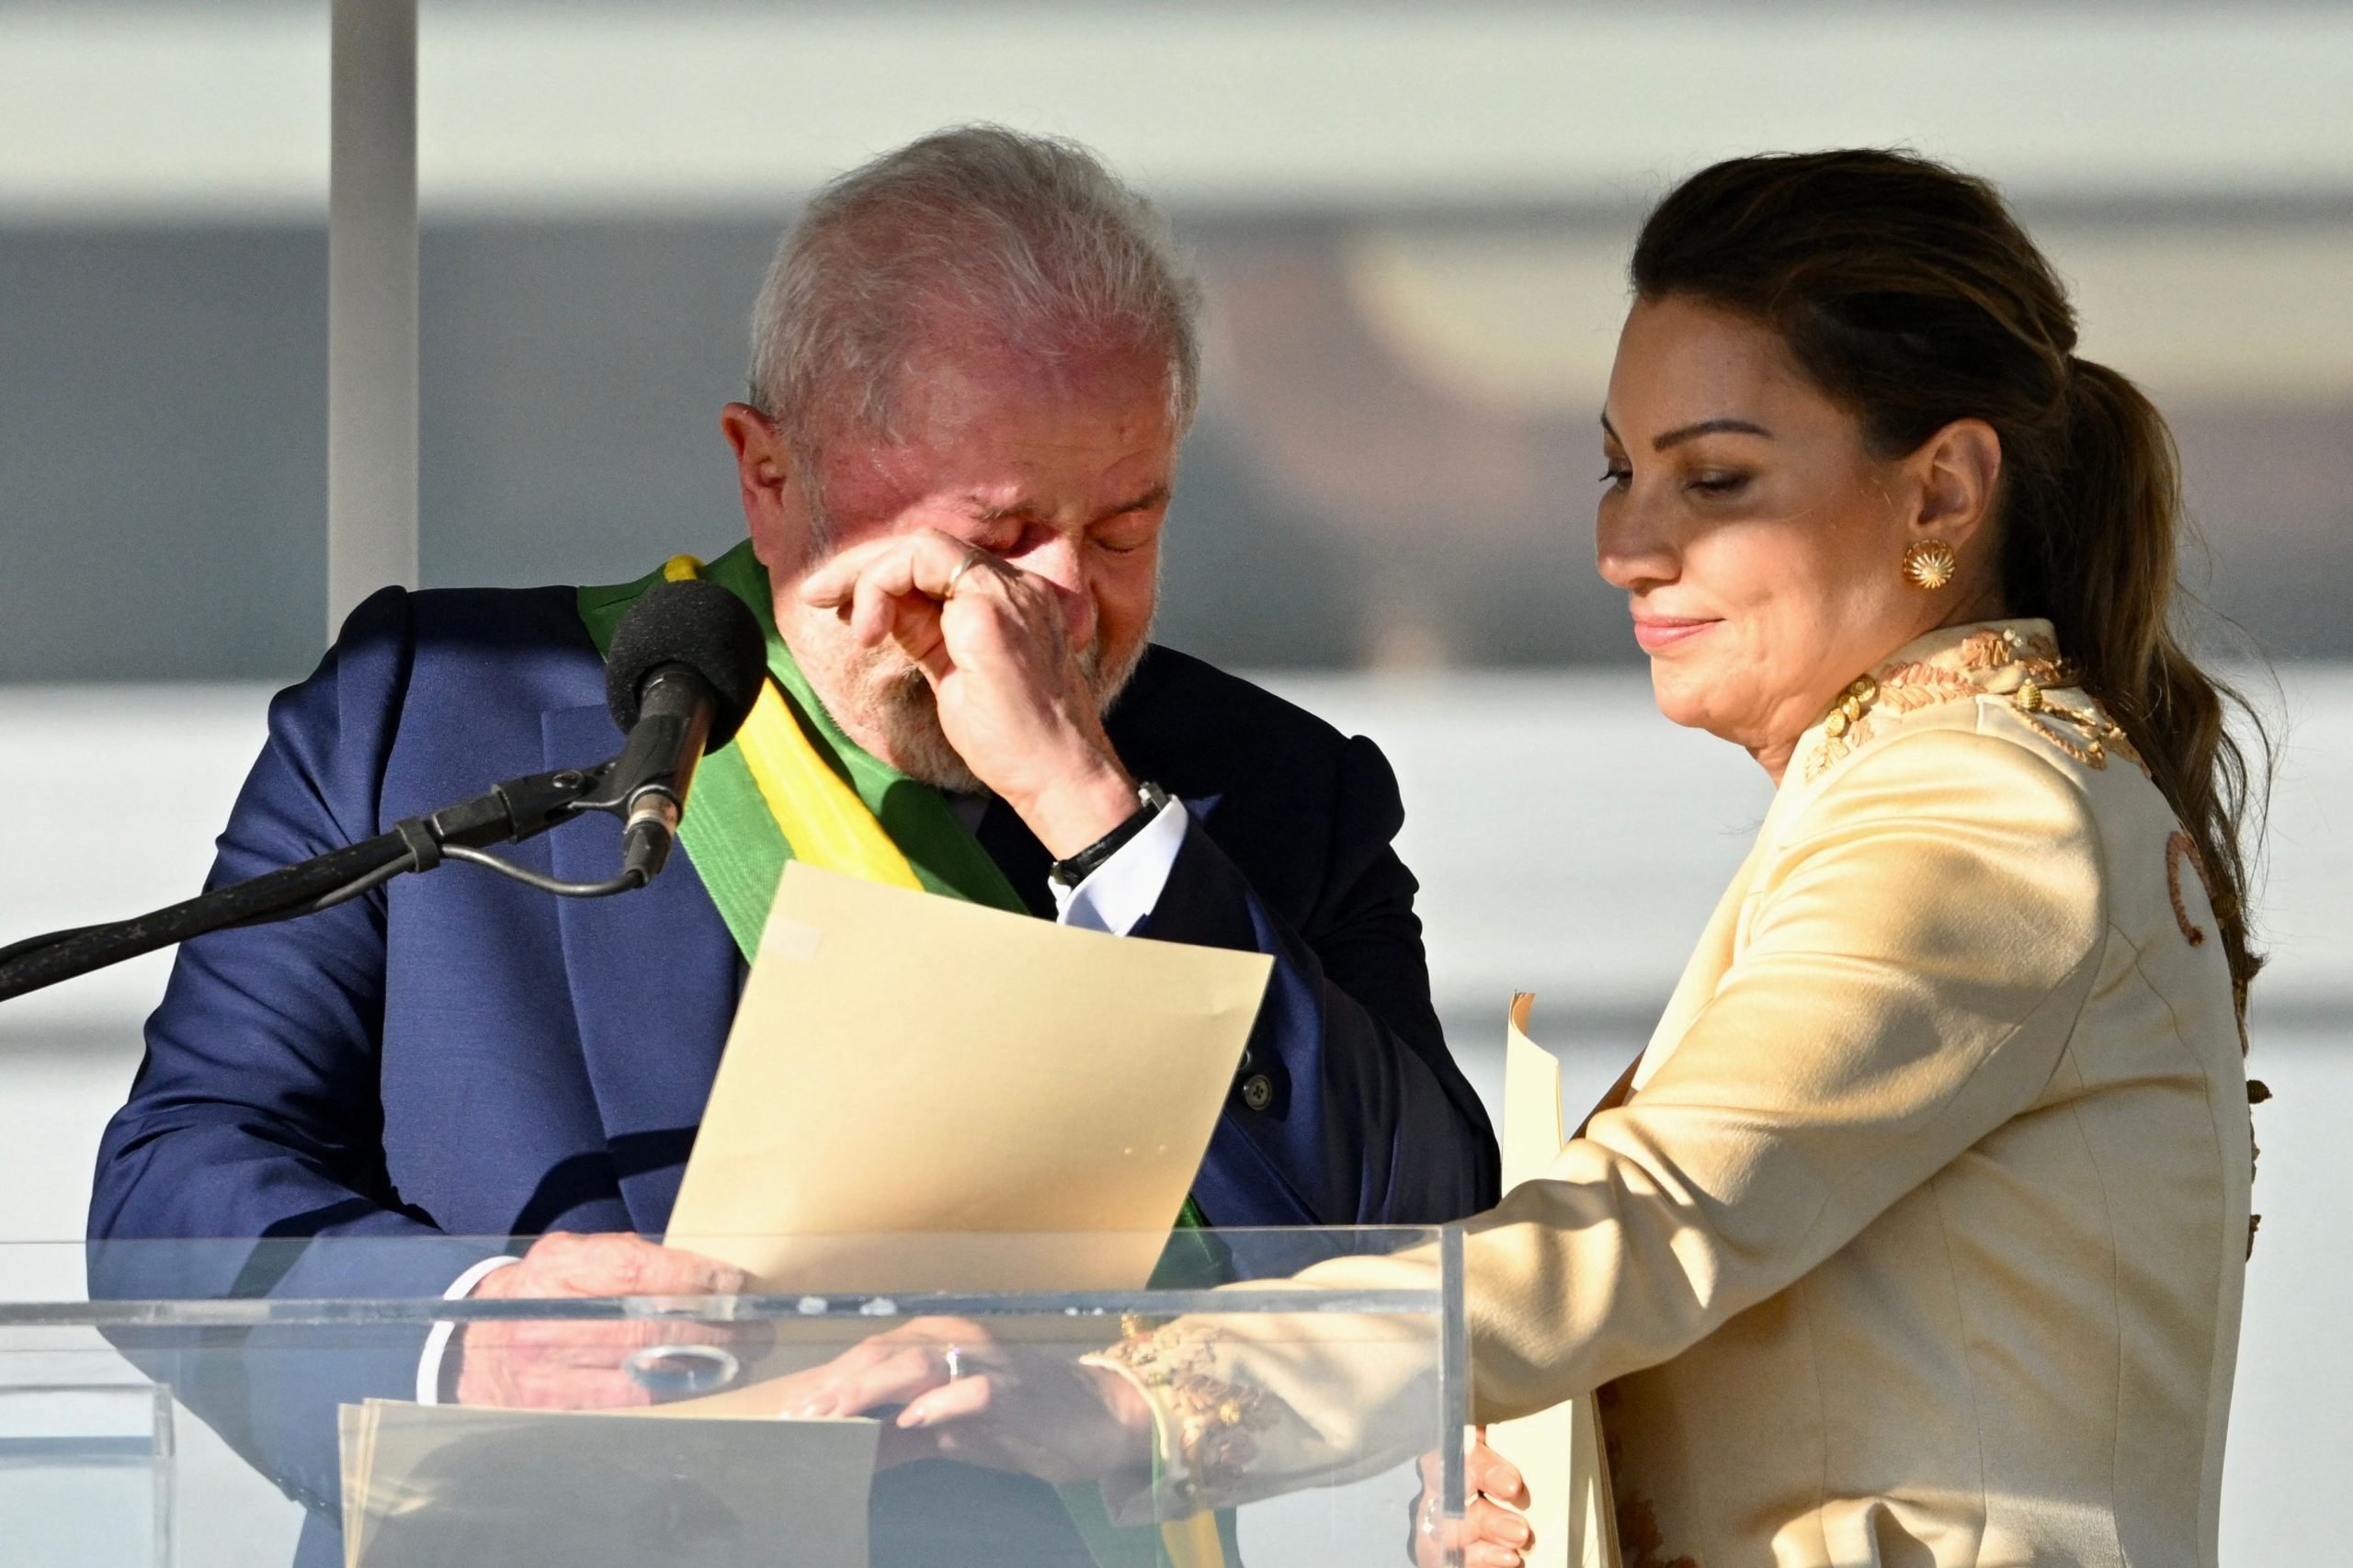 卢拉宣誓就任巴西总统　承诺重建国家  